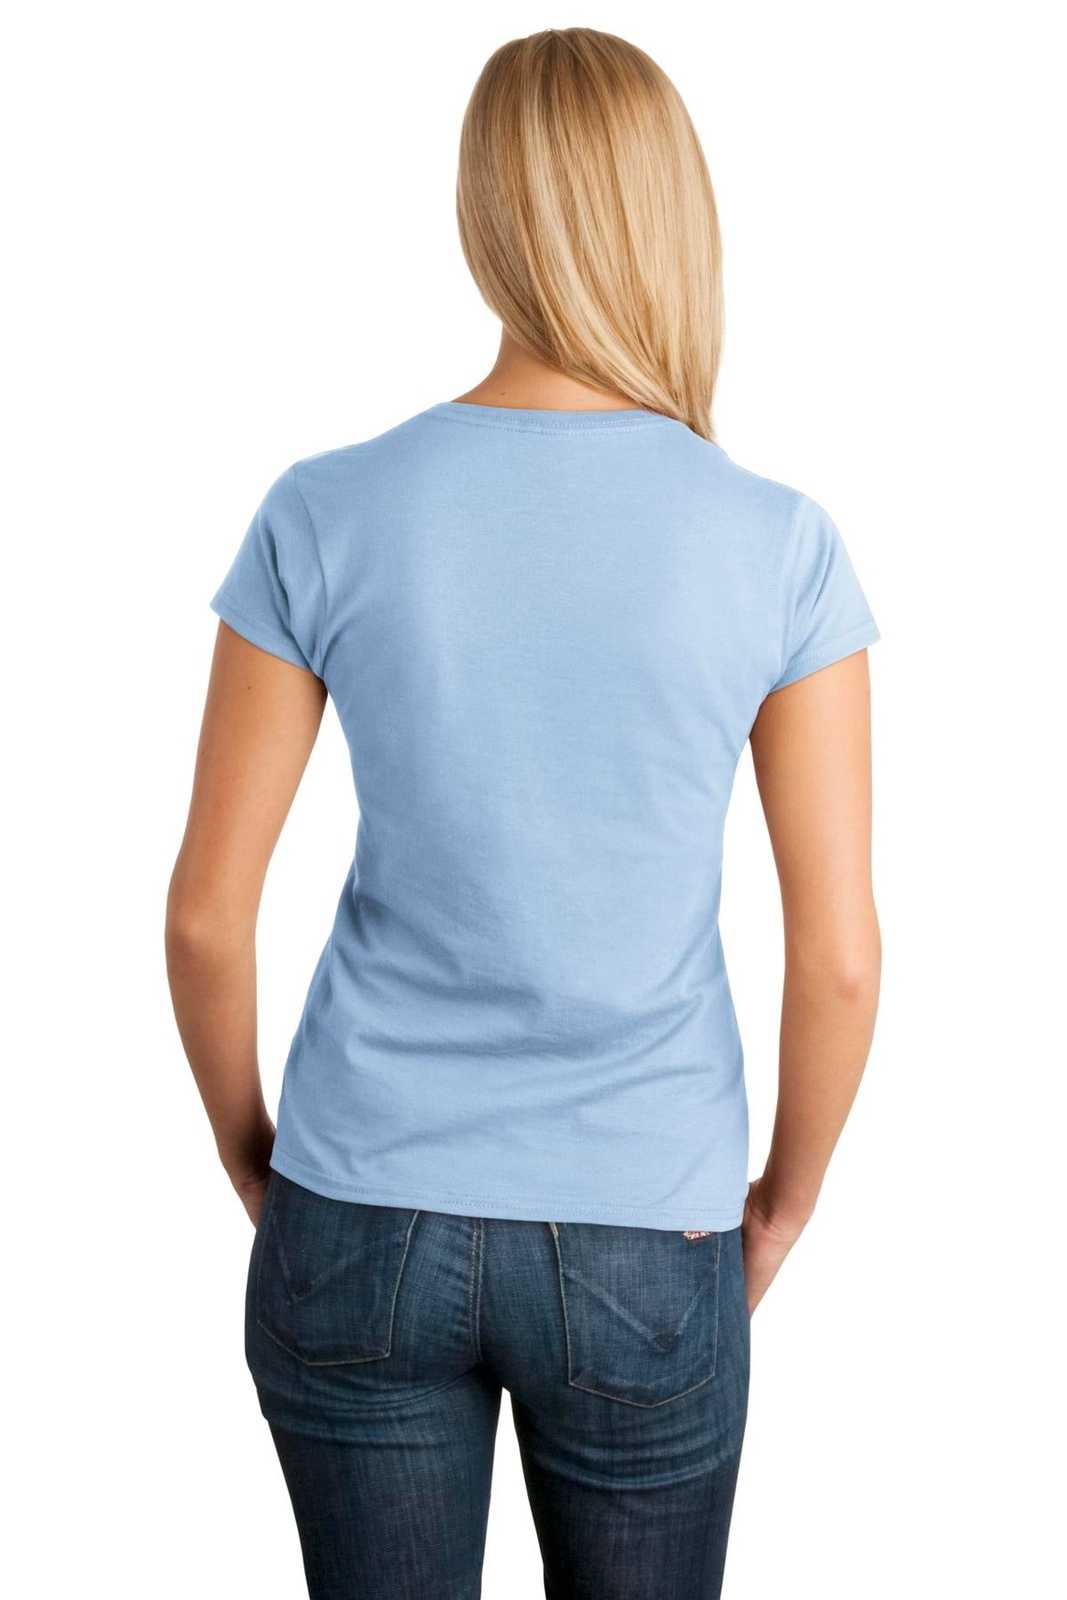 Gildan 64000L Softstyle Ladies T-Shirt - Light Blue - HIT a Double